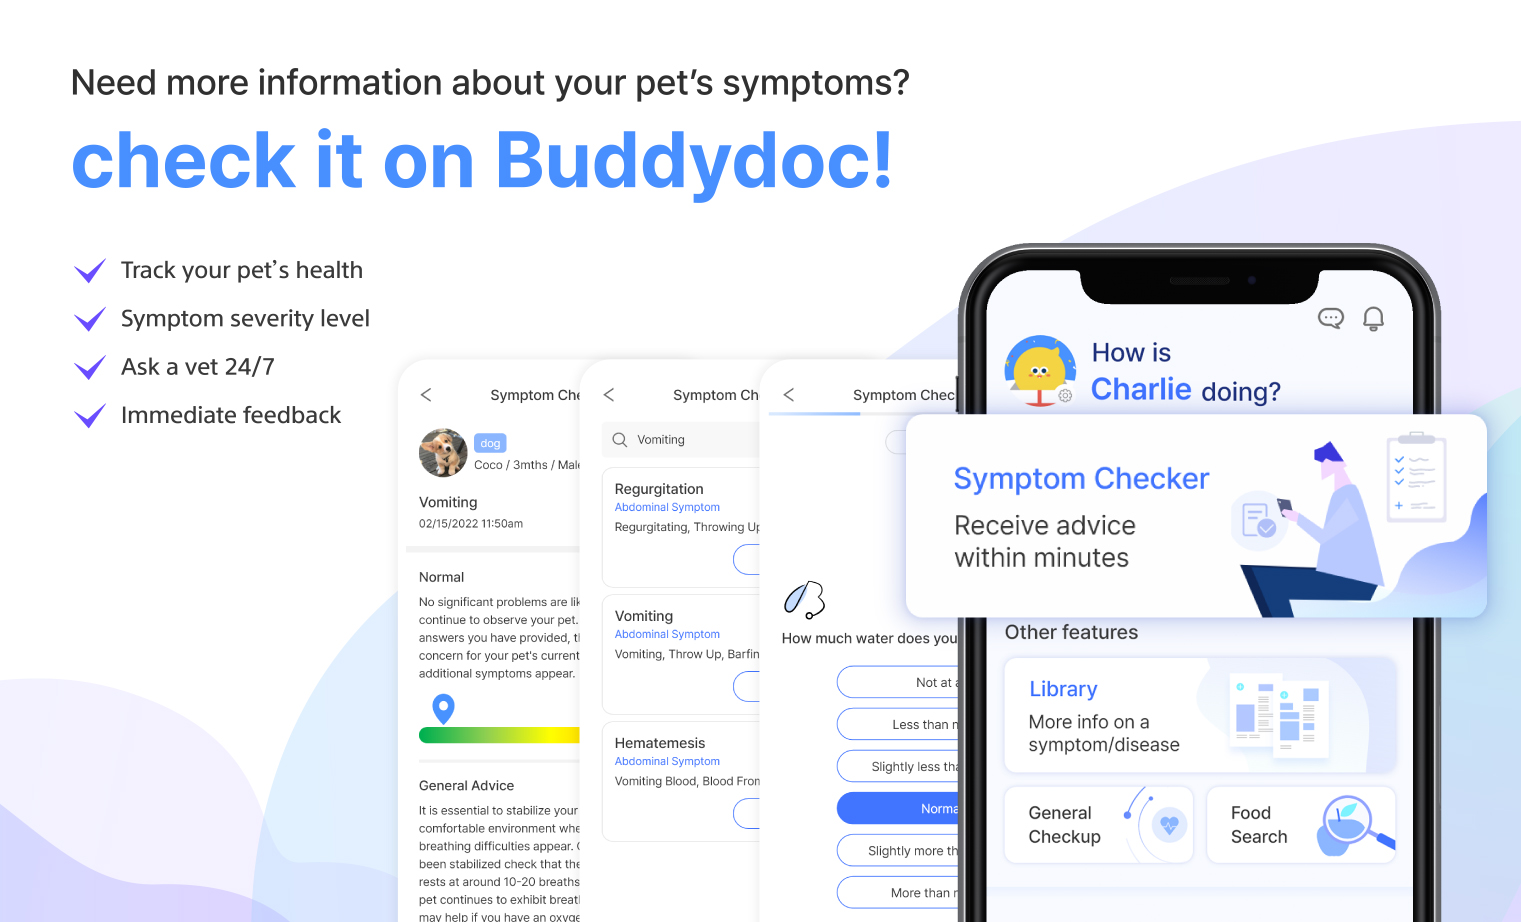 Buddydoc dog symptom checker infographic